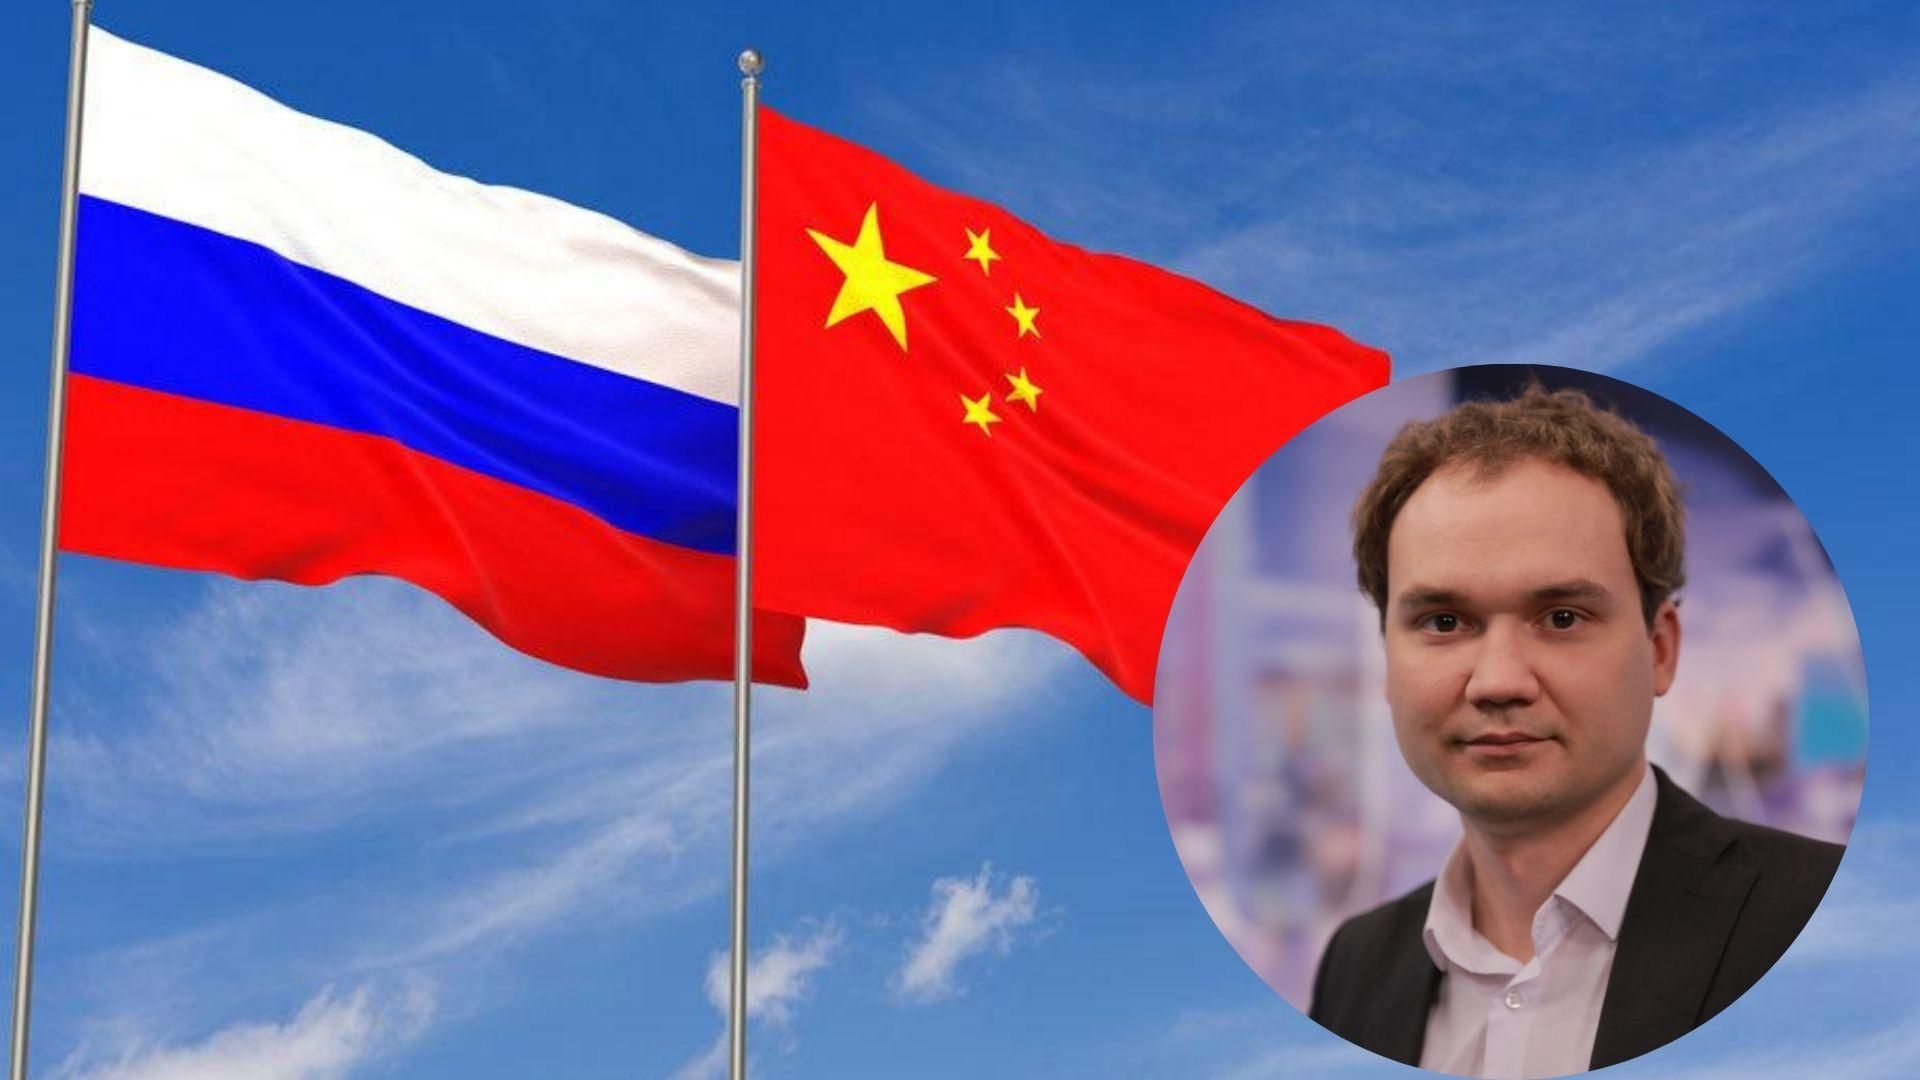 Россию не пропустят вне очереди, – Мусиенко о том, почему Кремль не обойдет санкции из-за Китая